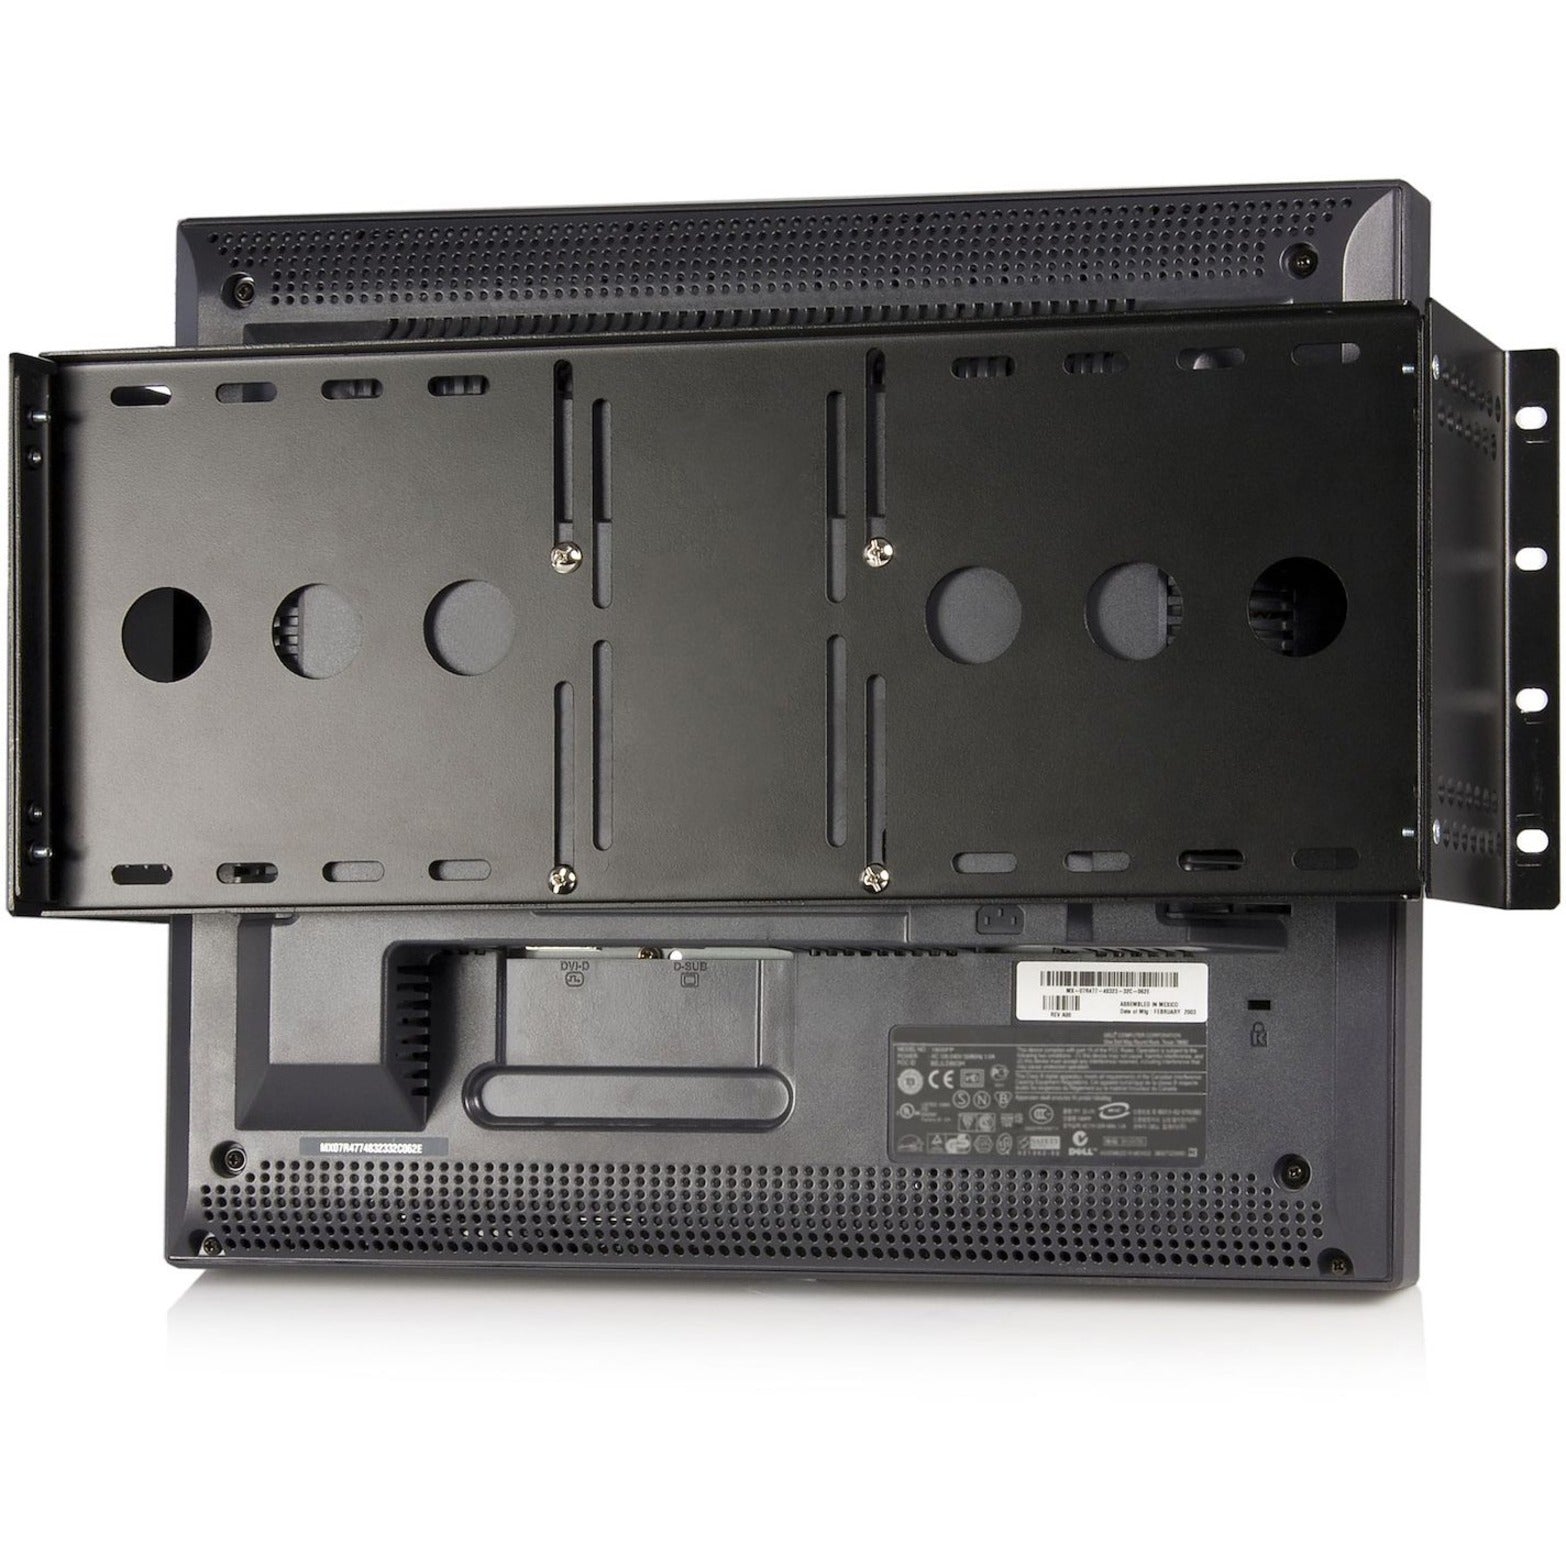 StarTech.com Support de montage universel pour moniteur LCD VESA pour rack ou armoire de 19 pouces Solution durable et polyvalente